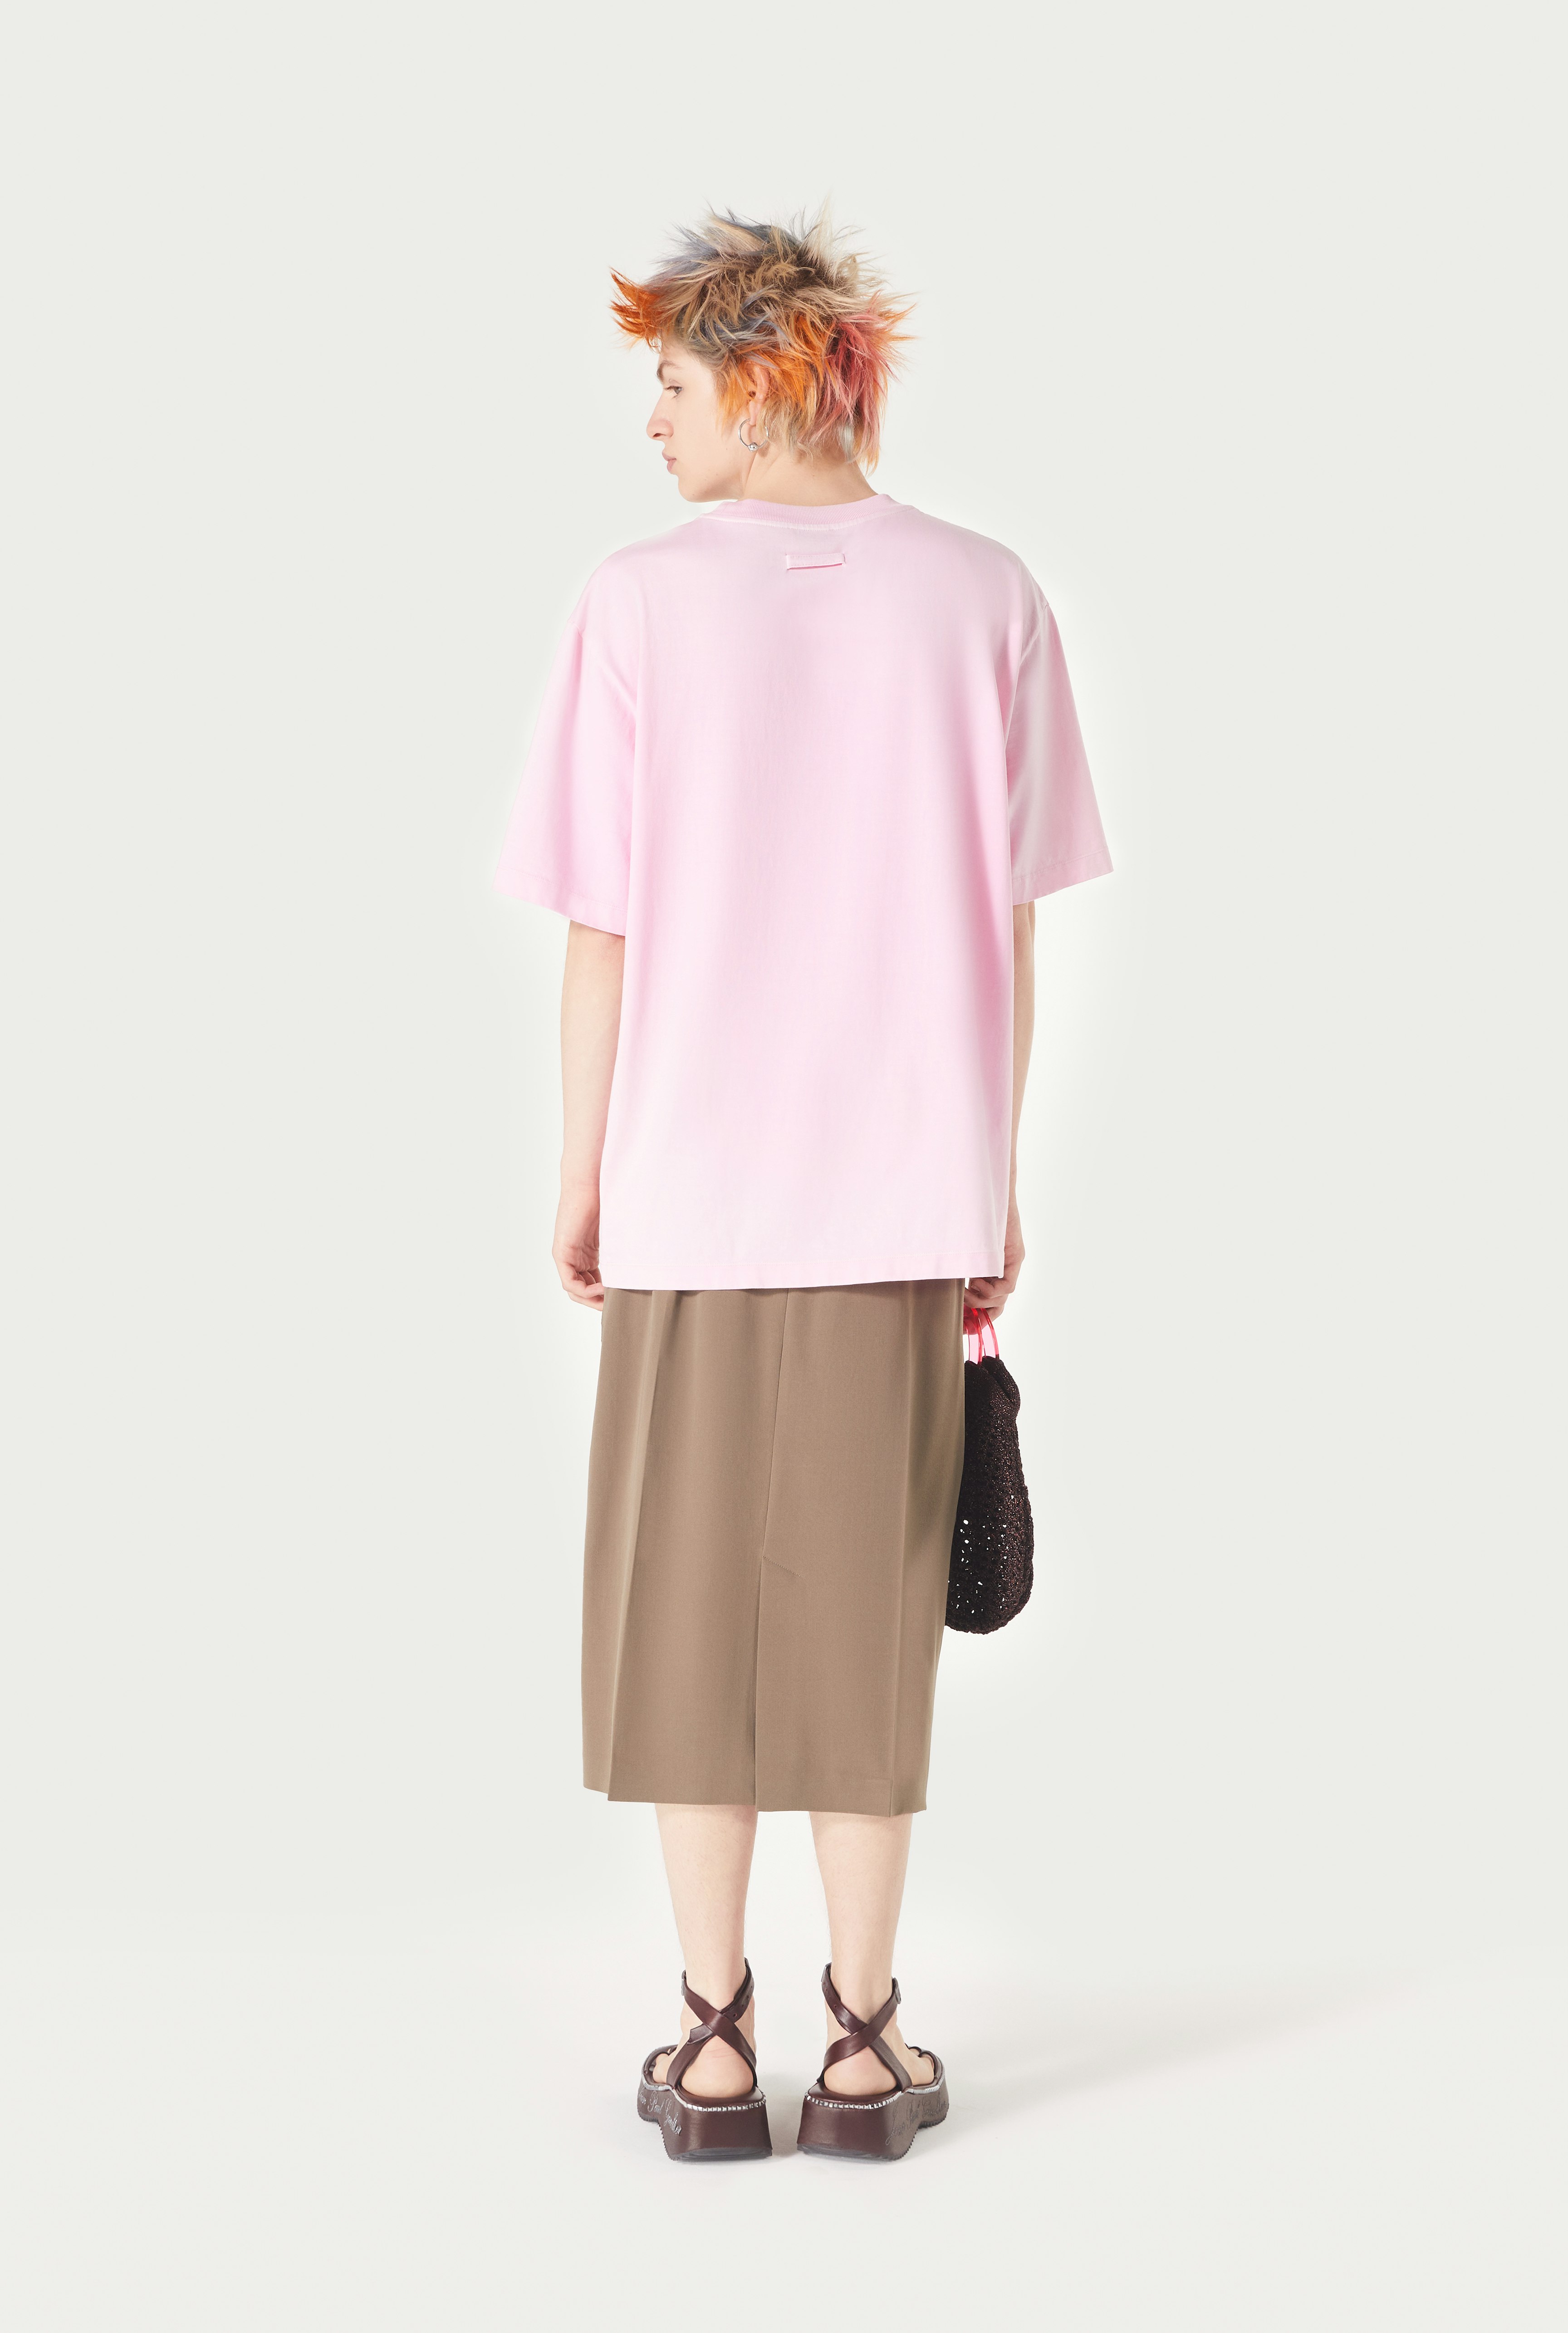 The Pink Évidemment T-Shirt Jean Paul Gaultier